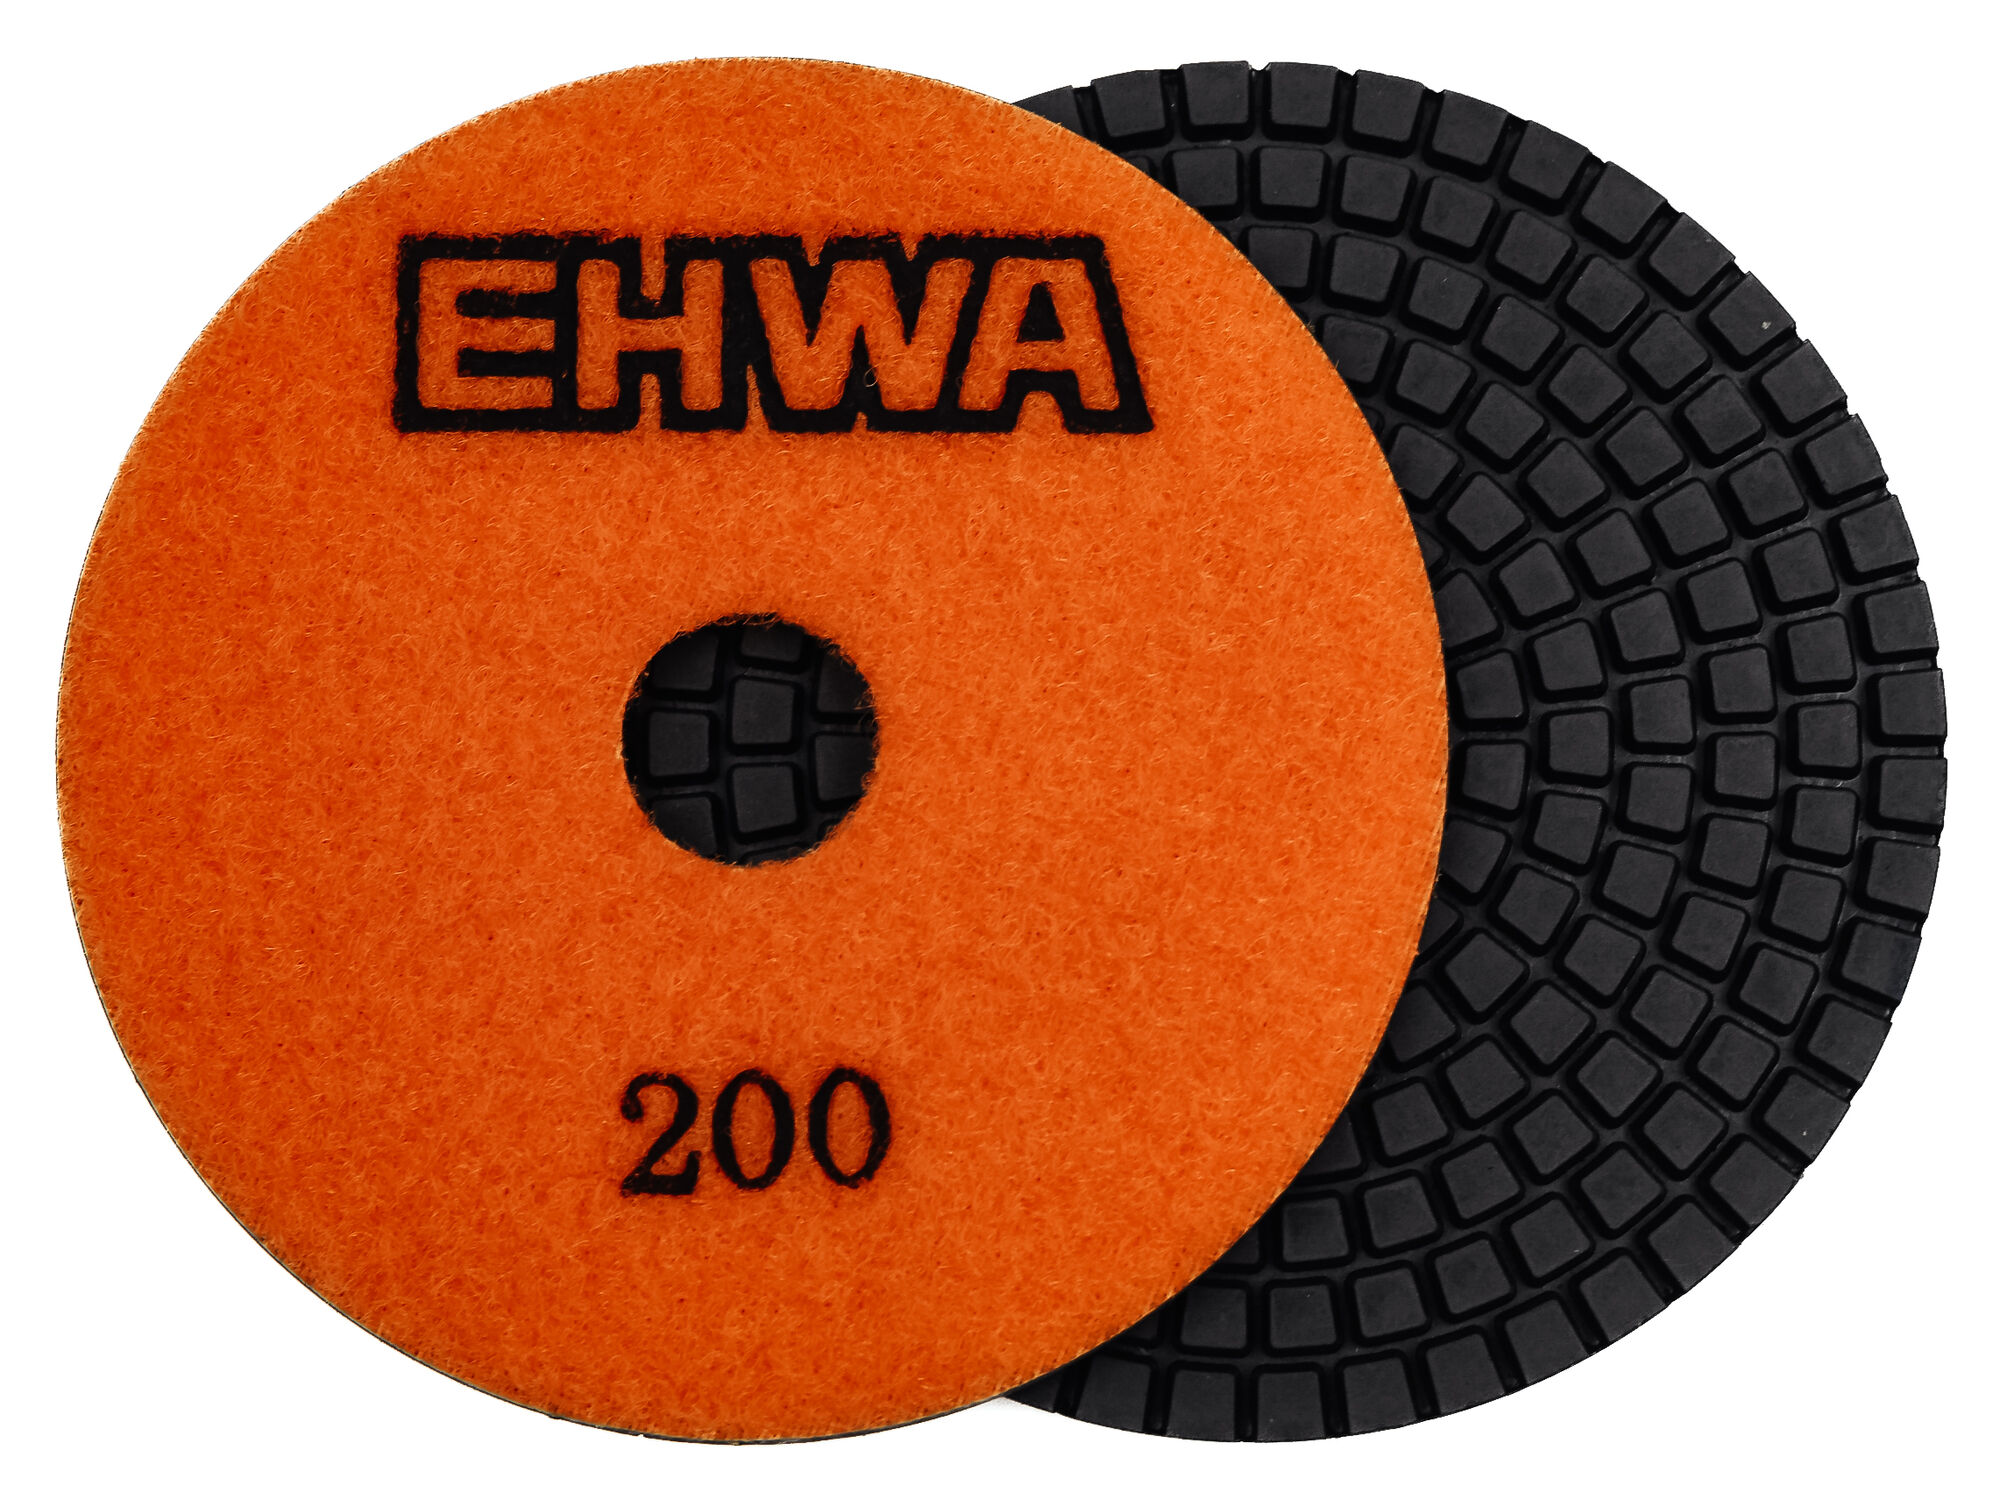 Алмазные гибкие диски № 200 ф 100 мм "EHWA" с водяным охлаждением 1 шт